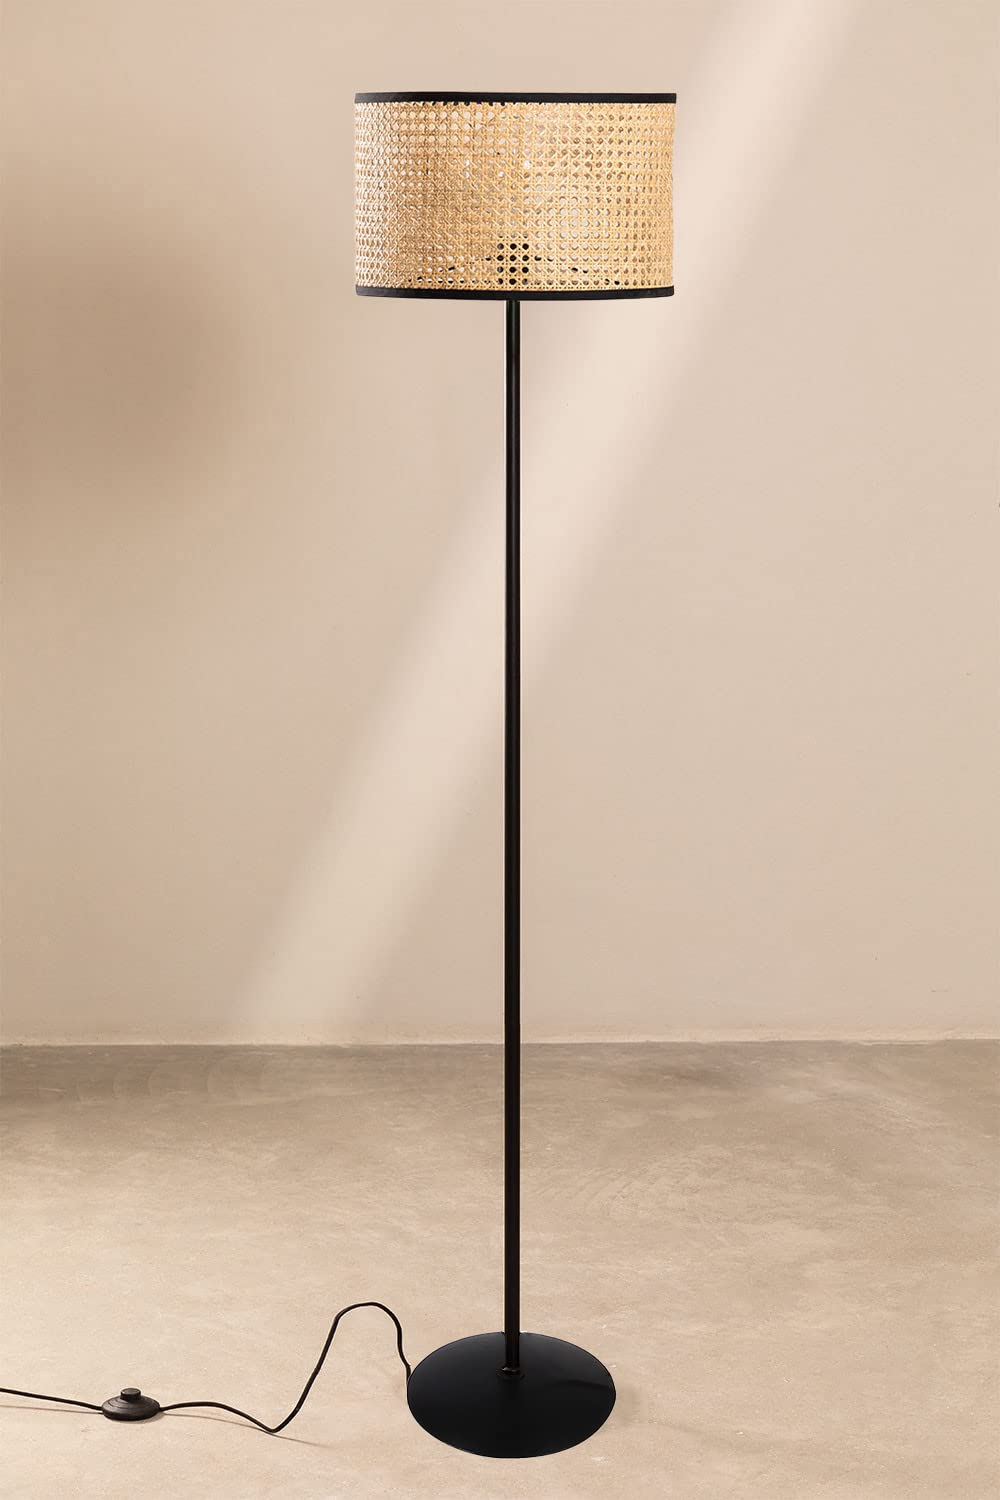 AKWAY Rattan Cane Webbing Floor Lamp Bamboo Floor Lamp Cane Floor Lamp Standing Lamp Wooden Standing lamp for Living Room Bedroom (14" D X 8") (Black Stand)(Eye Webbing) - Akway